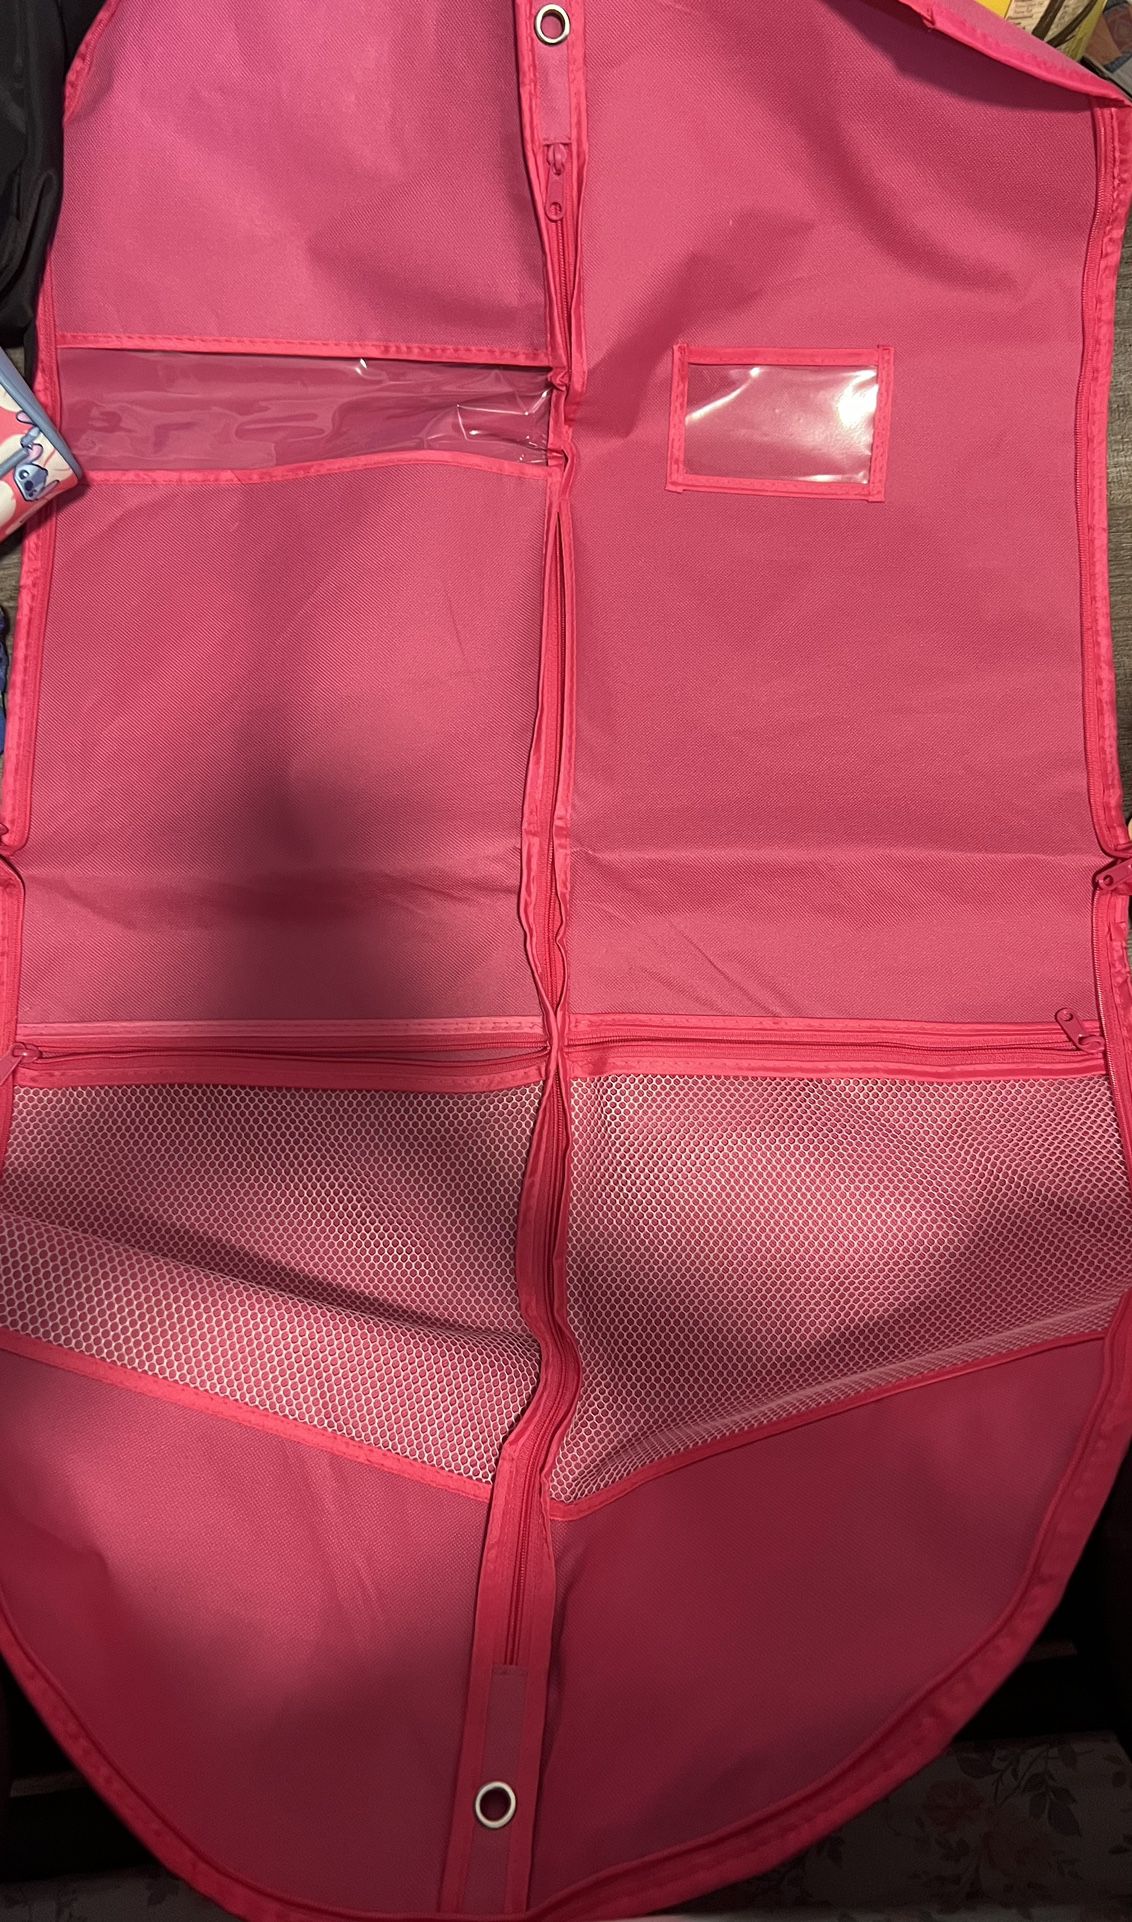 Dance Garment Bag with Zipper Pockets Set